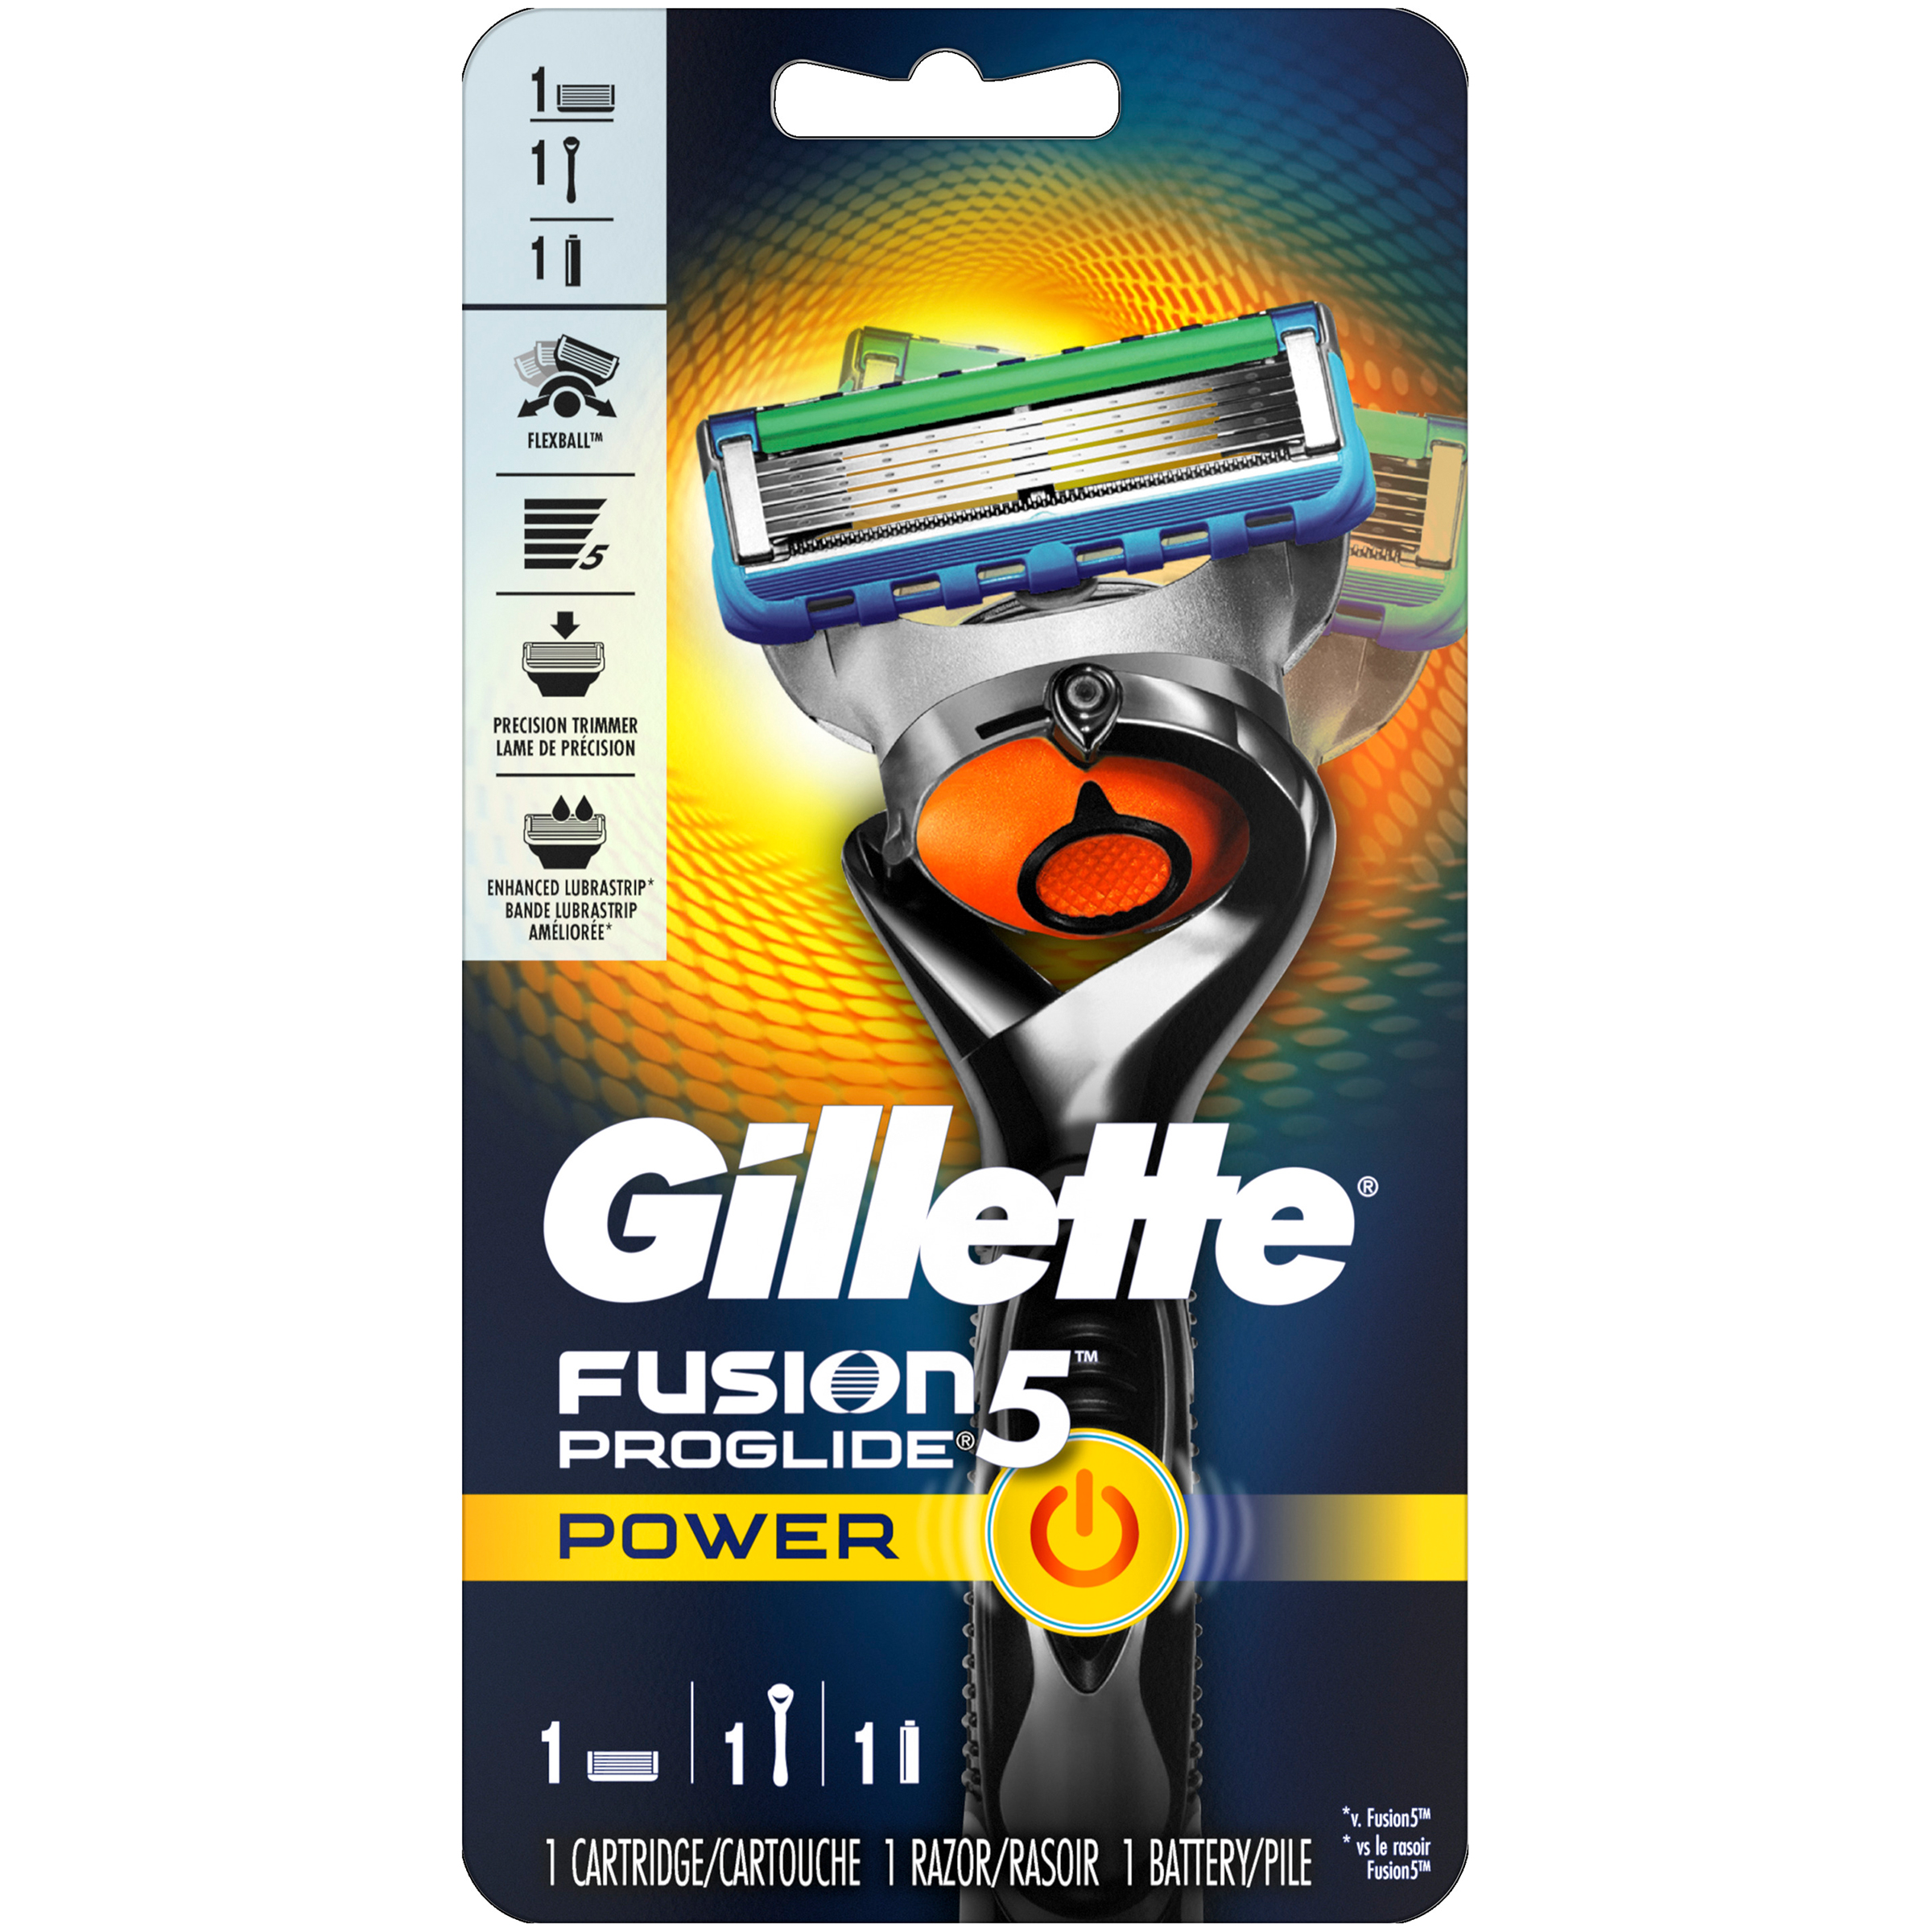 Gillette  Fusion5 ProGlide Power Men's Razor, Handle & 1 Blade Refill